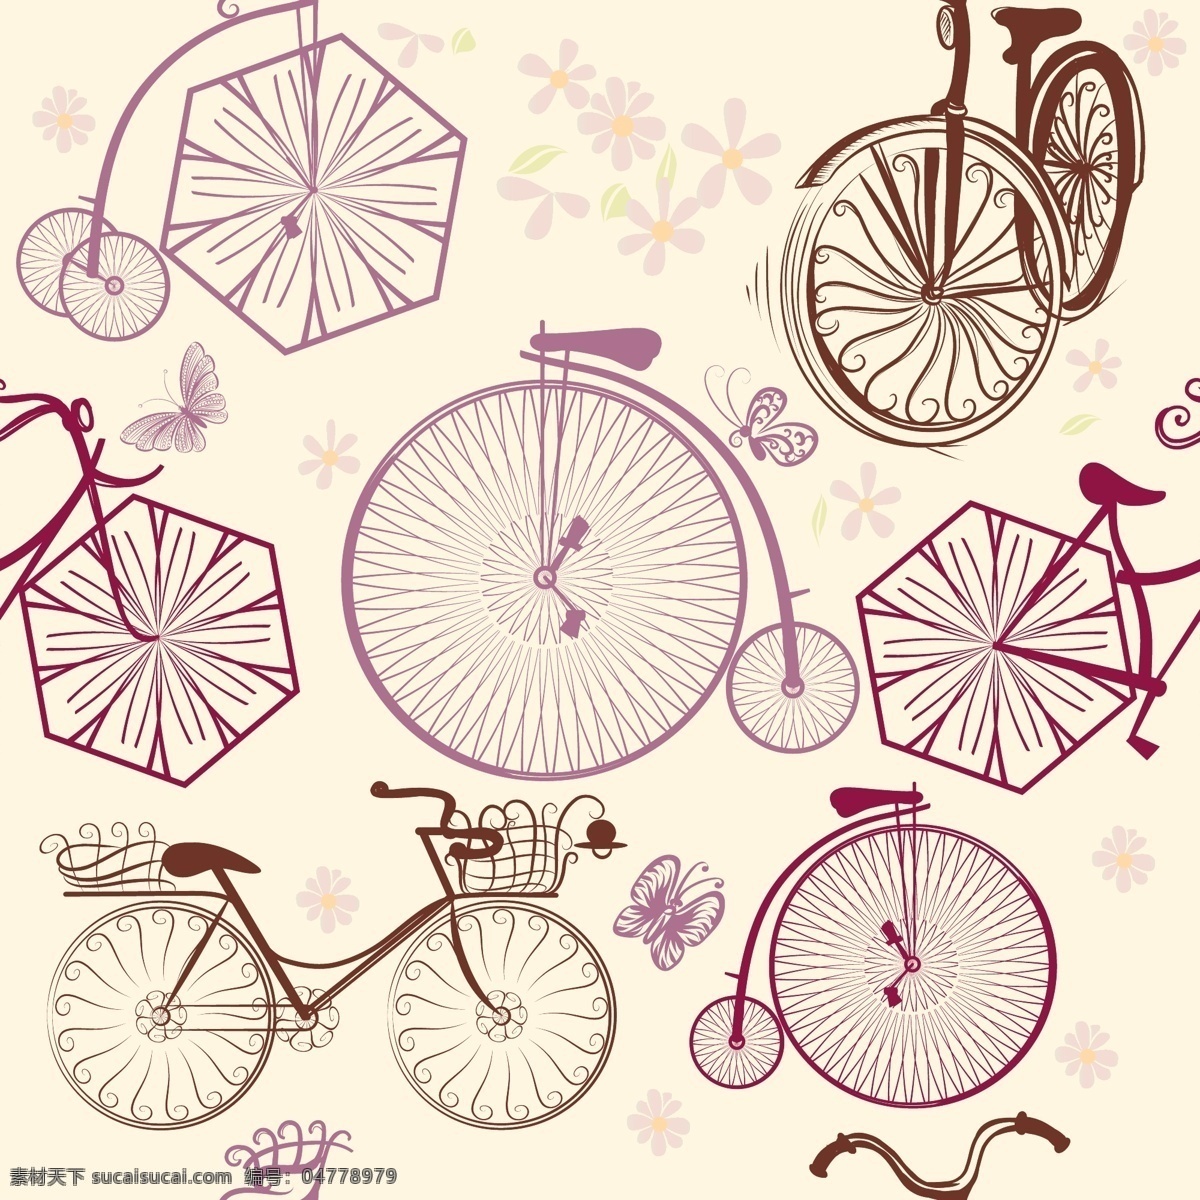 鲜花单车 浪漫单车 手绘单车 单车印花 菊花 百合花 夏季 鲜花 单车 自行车 交通工具设计 底纹边框 背景底纹